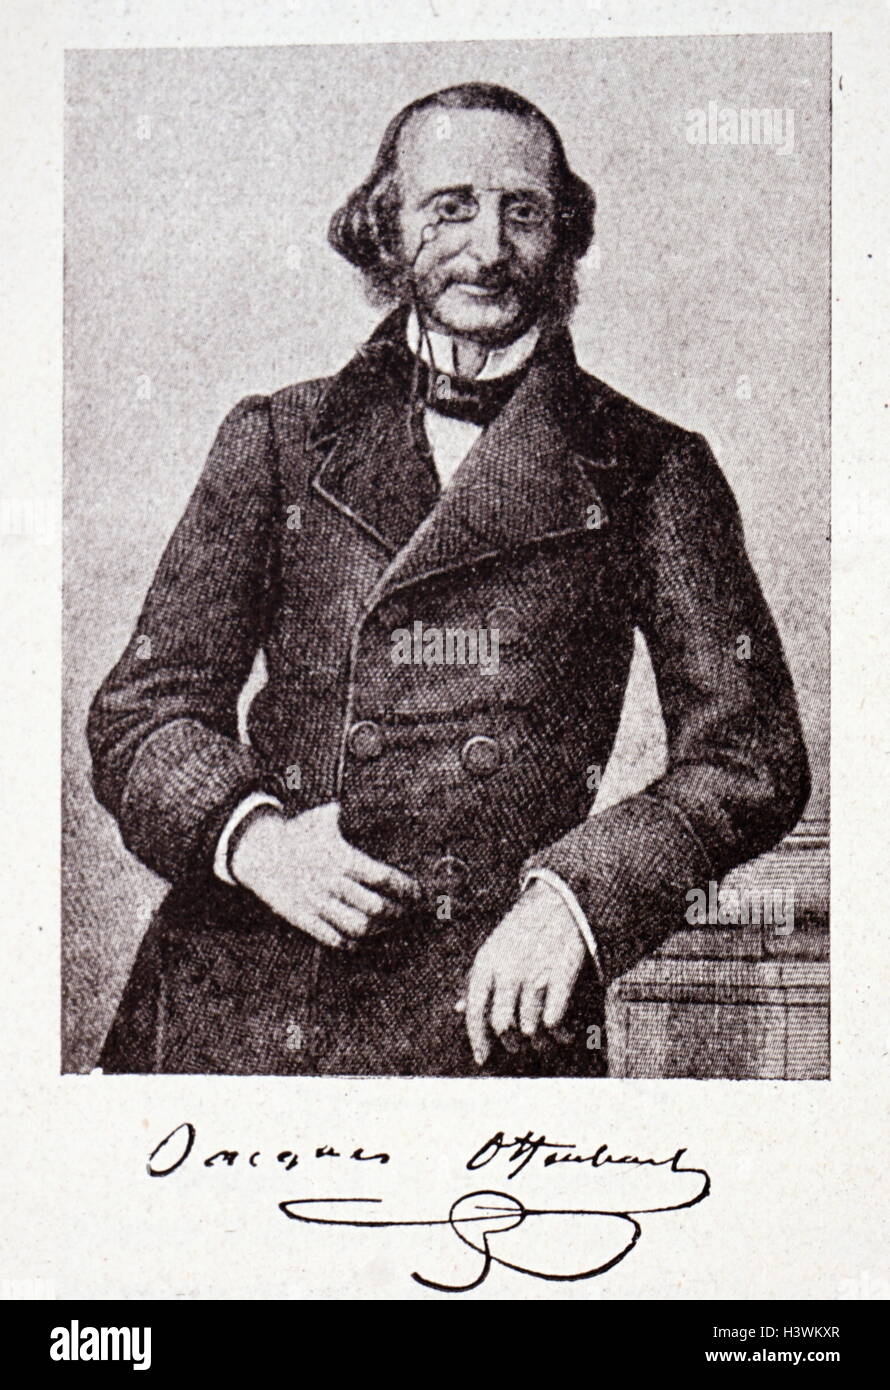 Ritratto inciso di Jacques Offenbach (1819-1880) un tedesco-nato il compositore francese, violoncellista e impresario del periodo romantico. Datata del XIX secolo Foto Stock